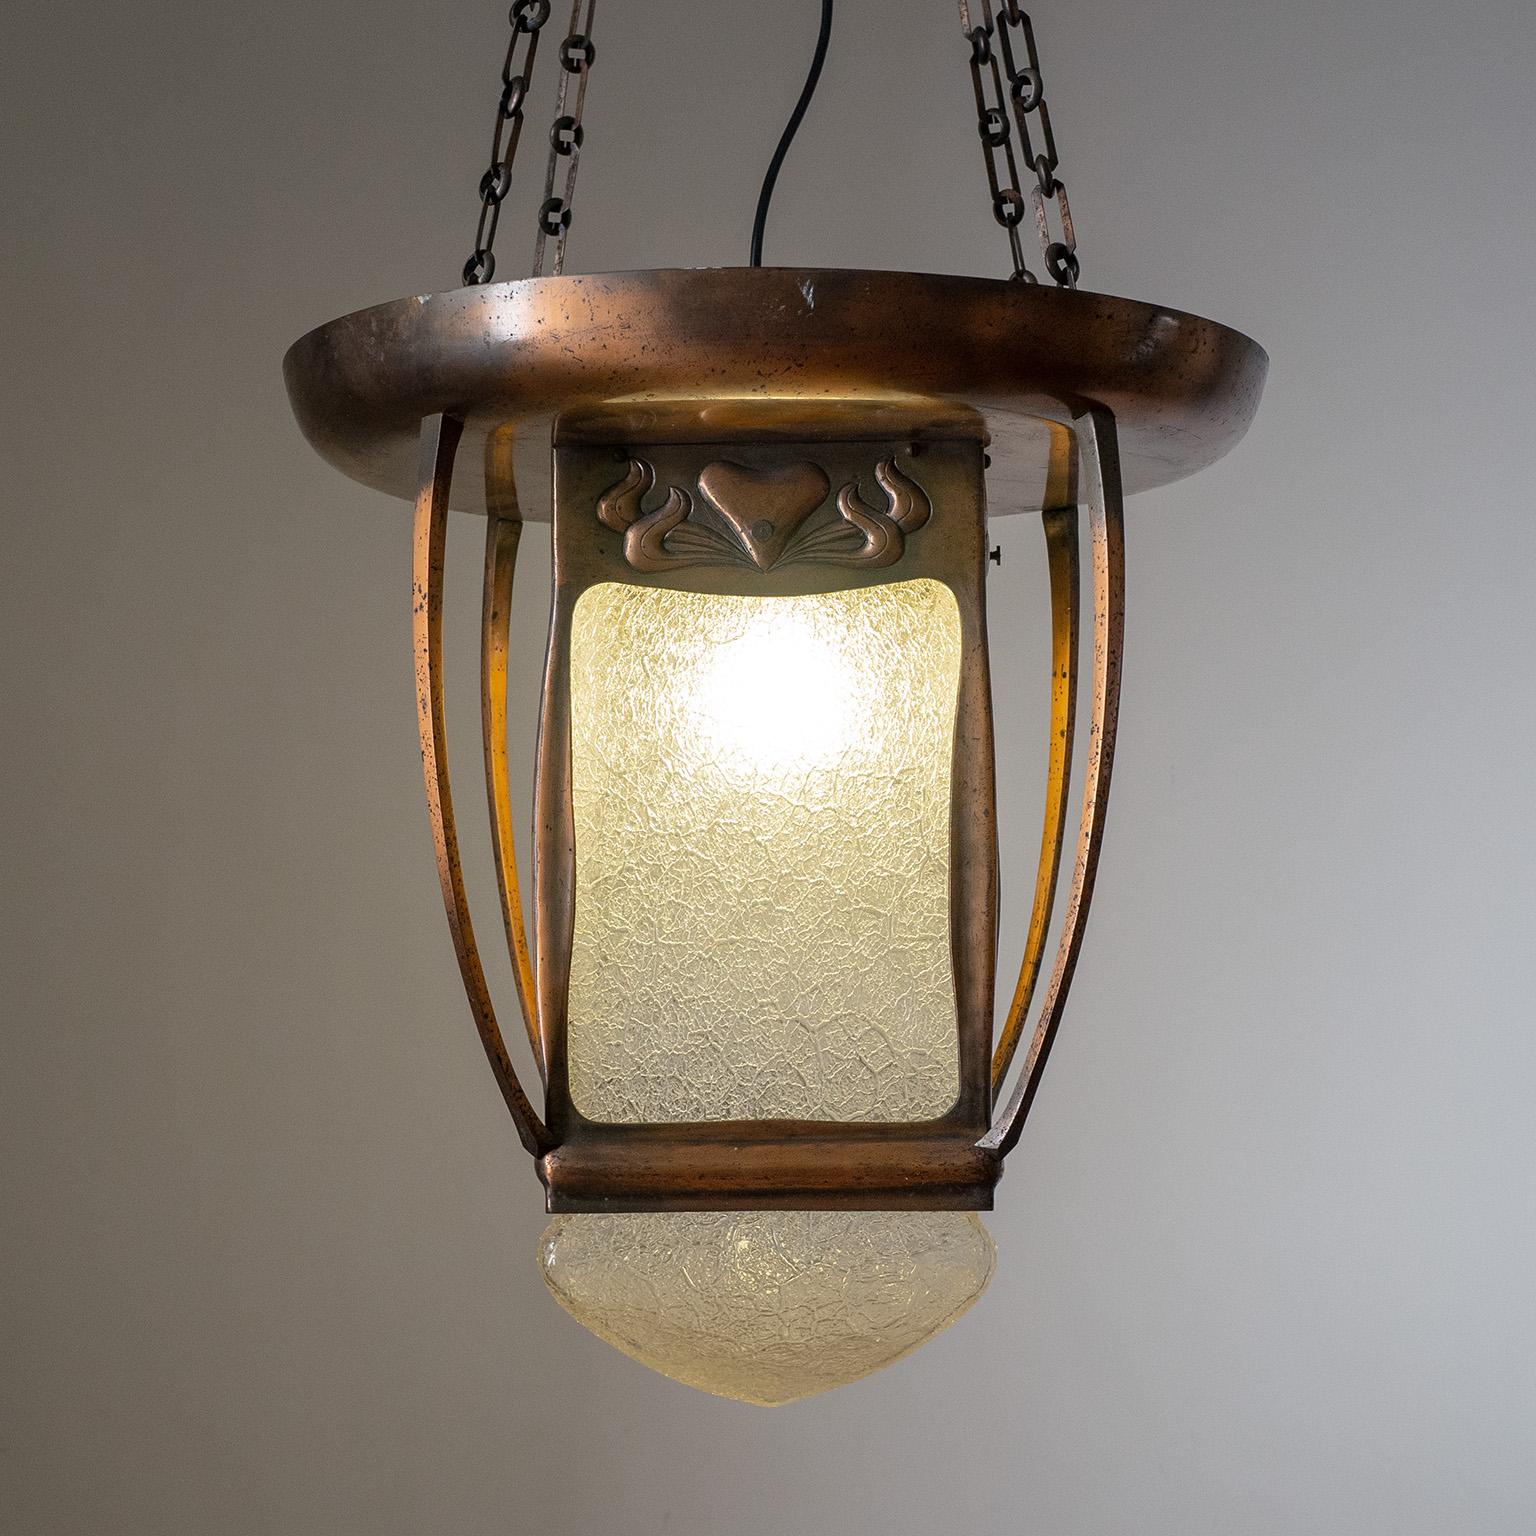 Jugendstil Large Art Nouveau Copper and Glass Lantern